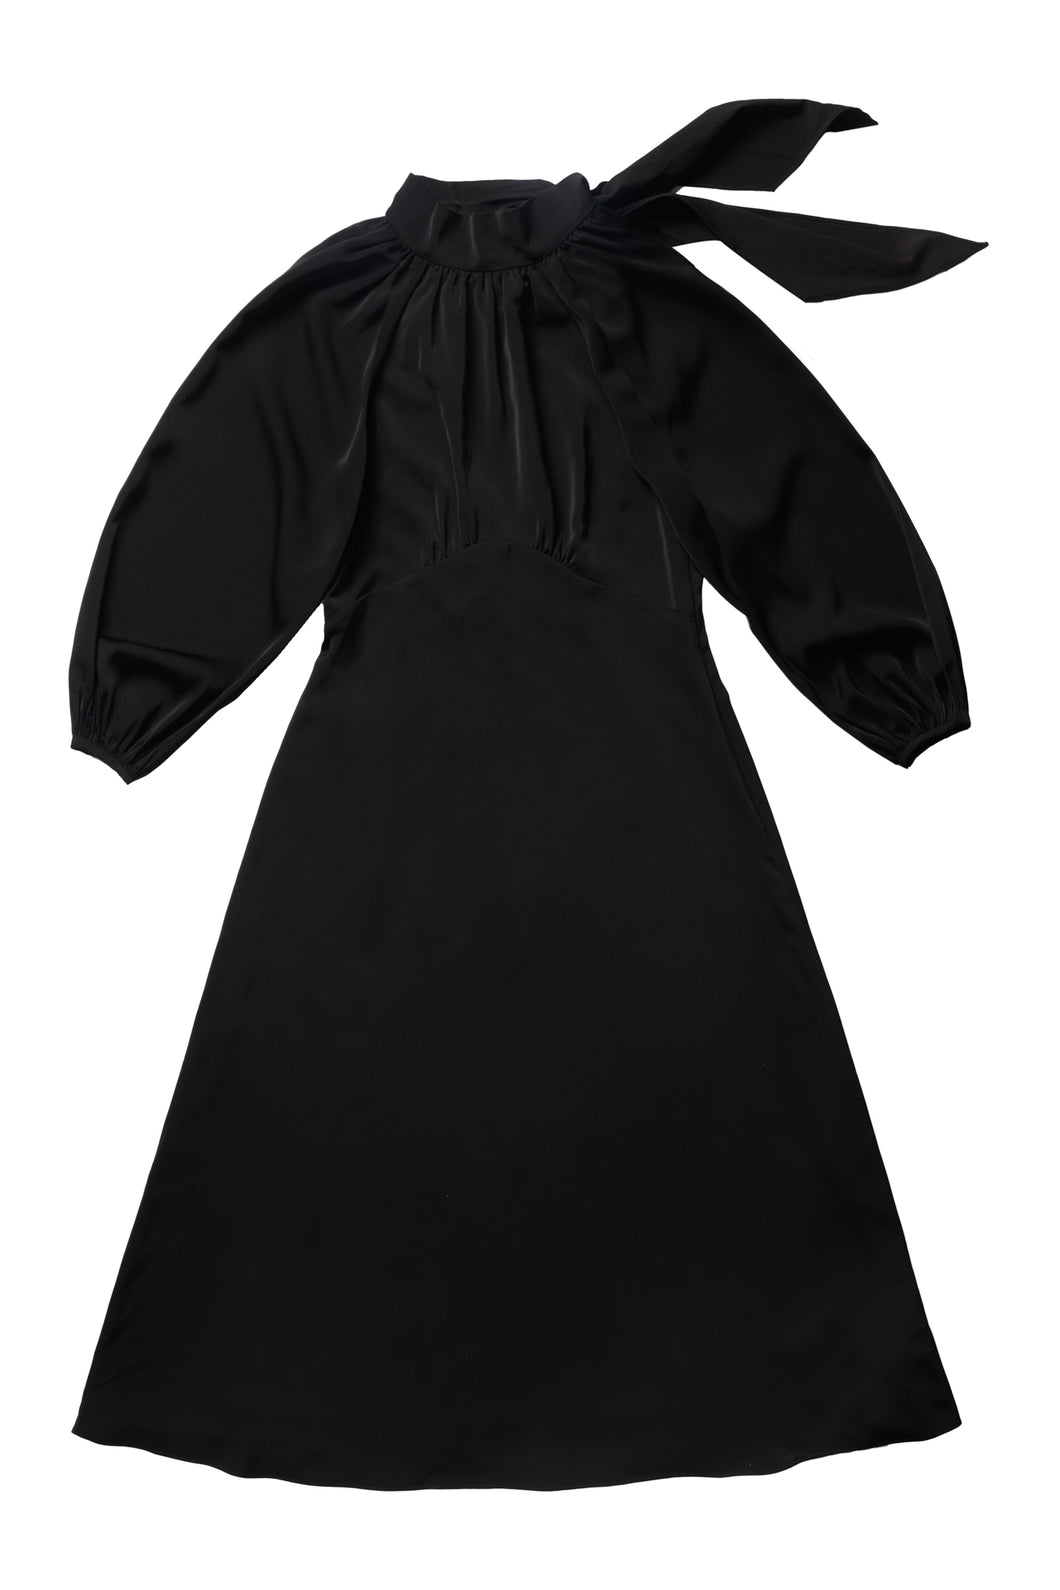 Fiona Dress in Black #7978LBL